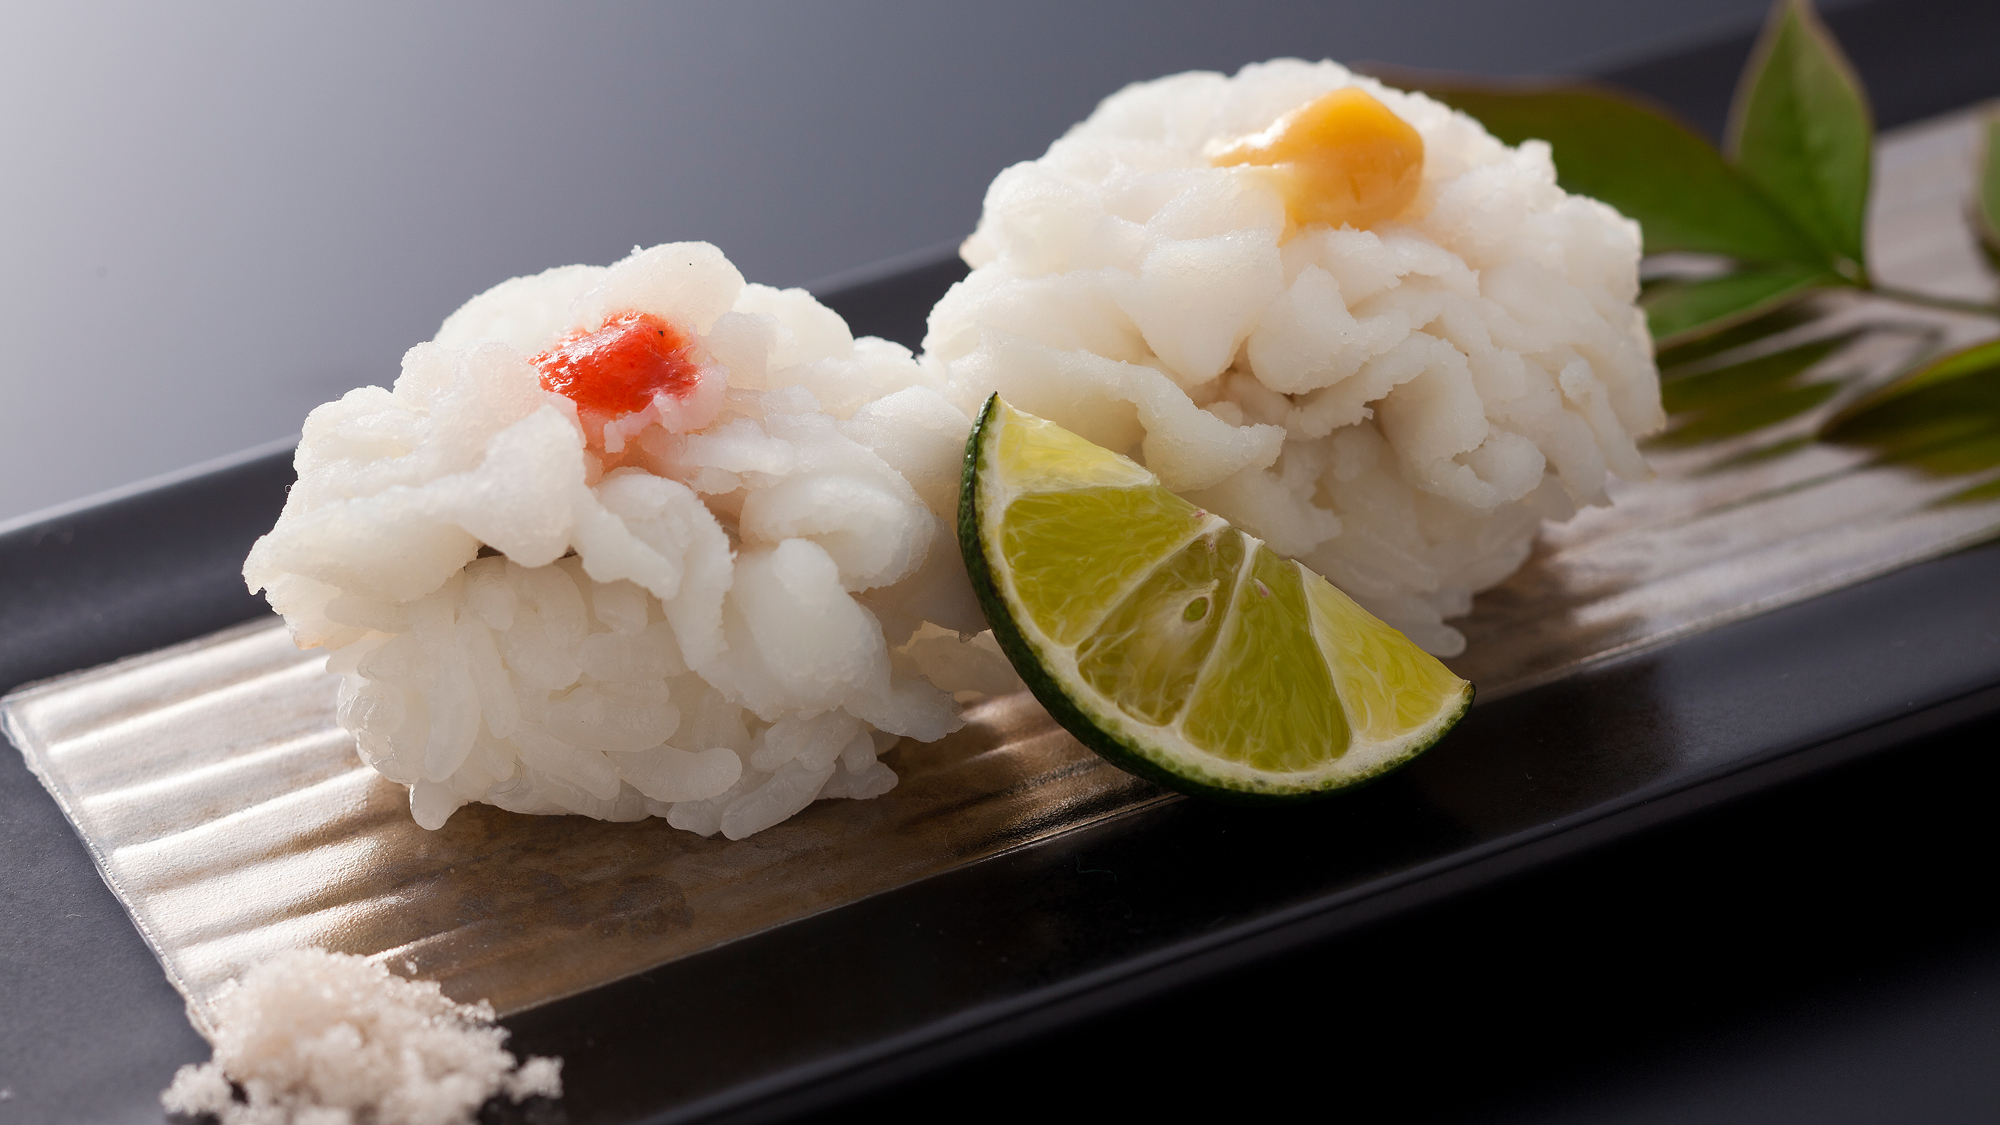 鱧寿司は素材そのものの味が楽しめるよう藻塩をかけて≪料理イメージ≫